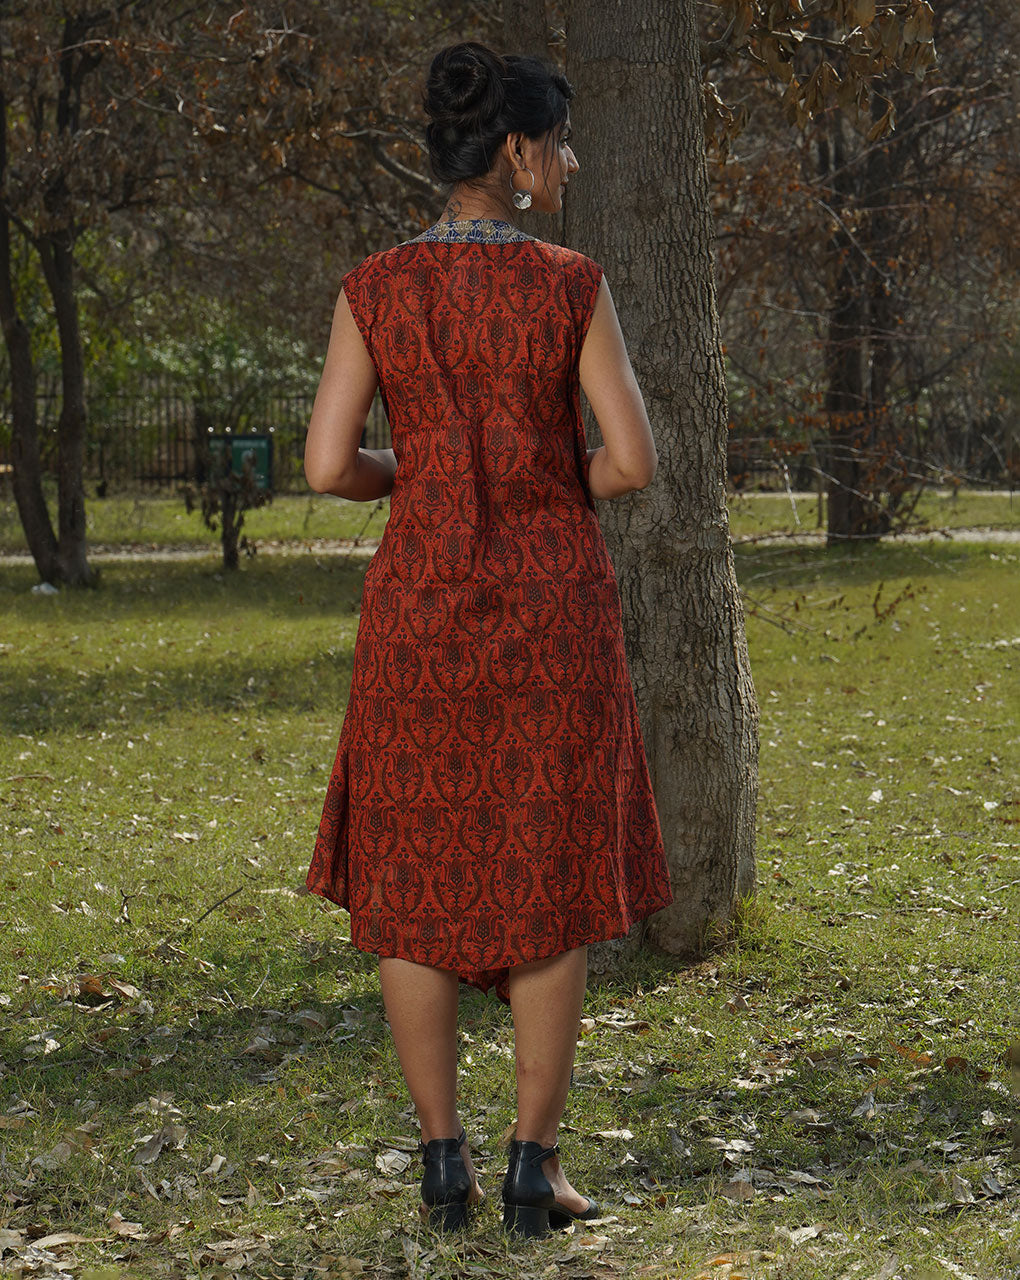 Swetchha Wraparound Dress - Fabriclore.com